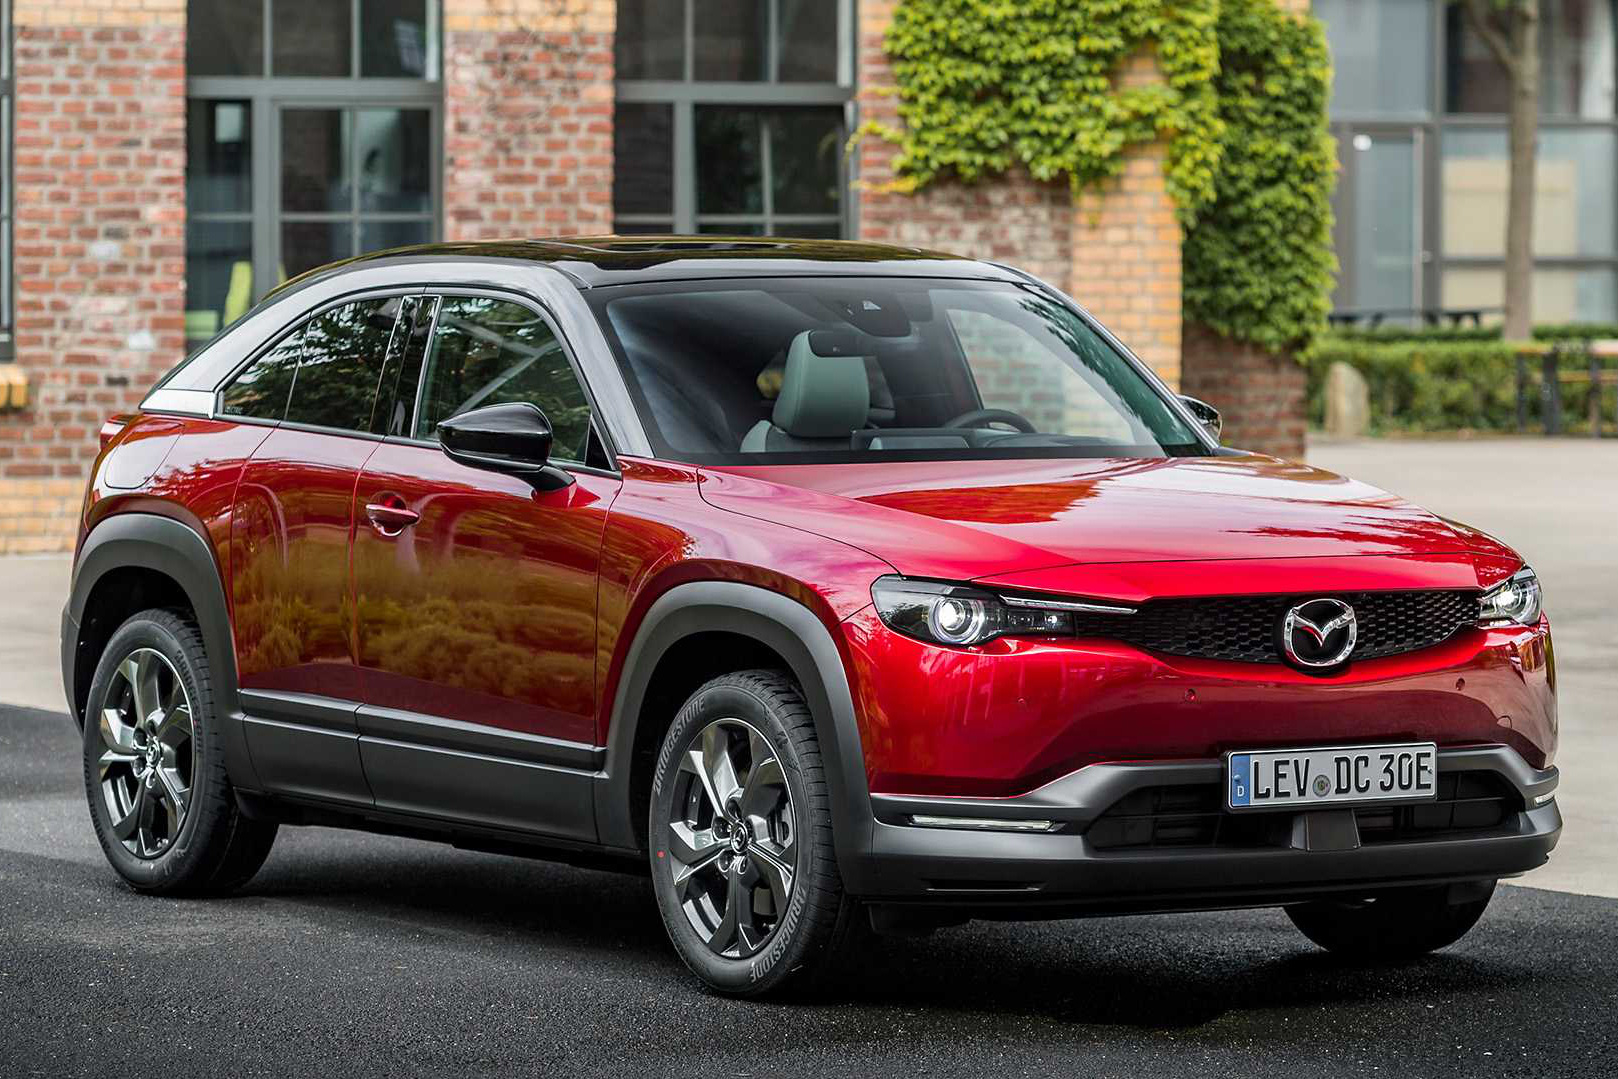 Hé lộ loạt xe Mazda mới sắp ra mắt: CX-5 và Mazda6 dùng khung gầm mới, sẽ có động cơ điện